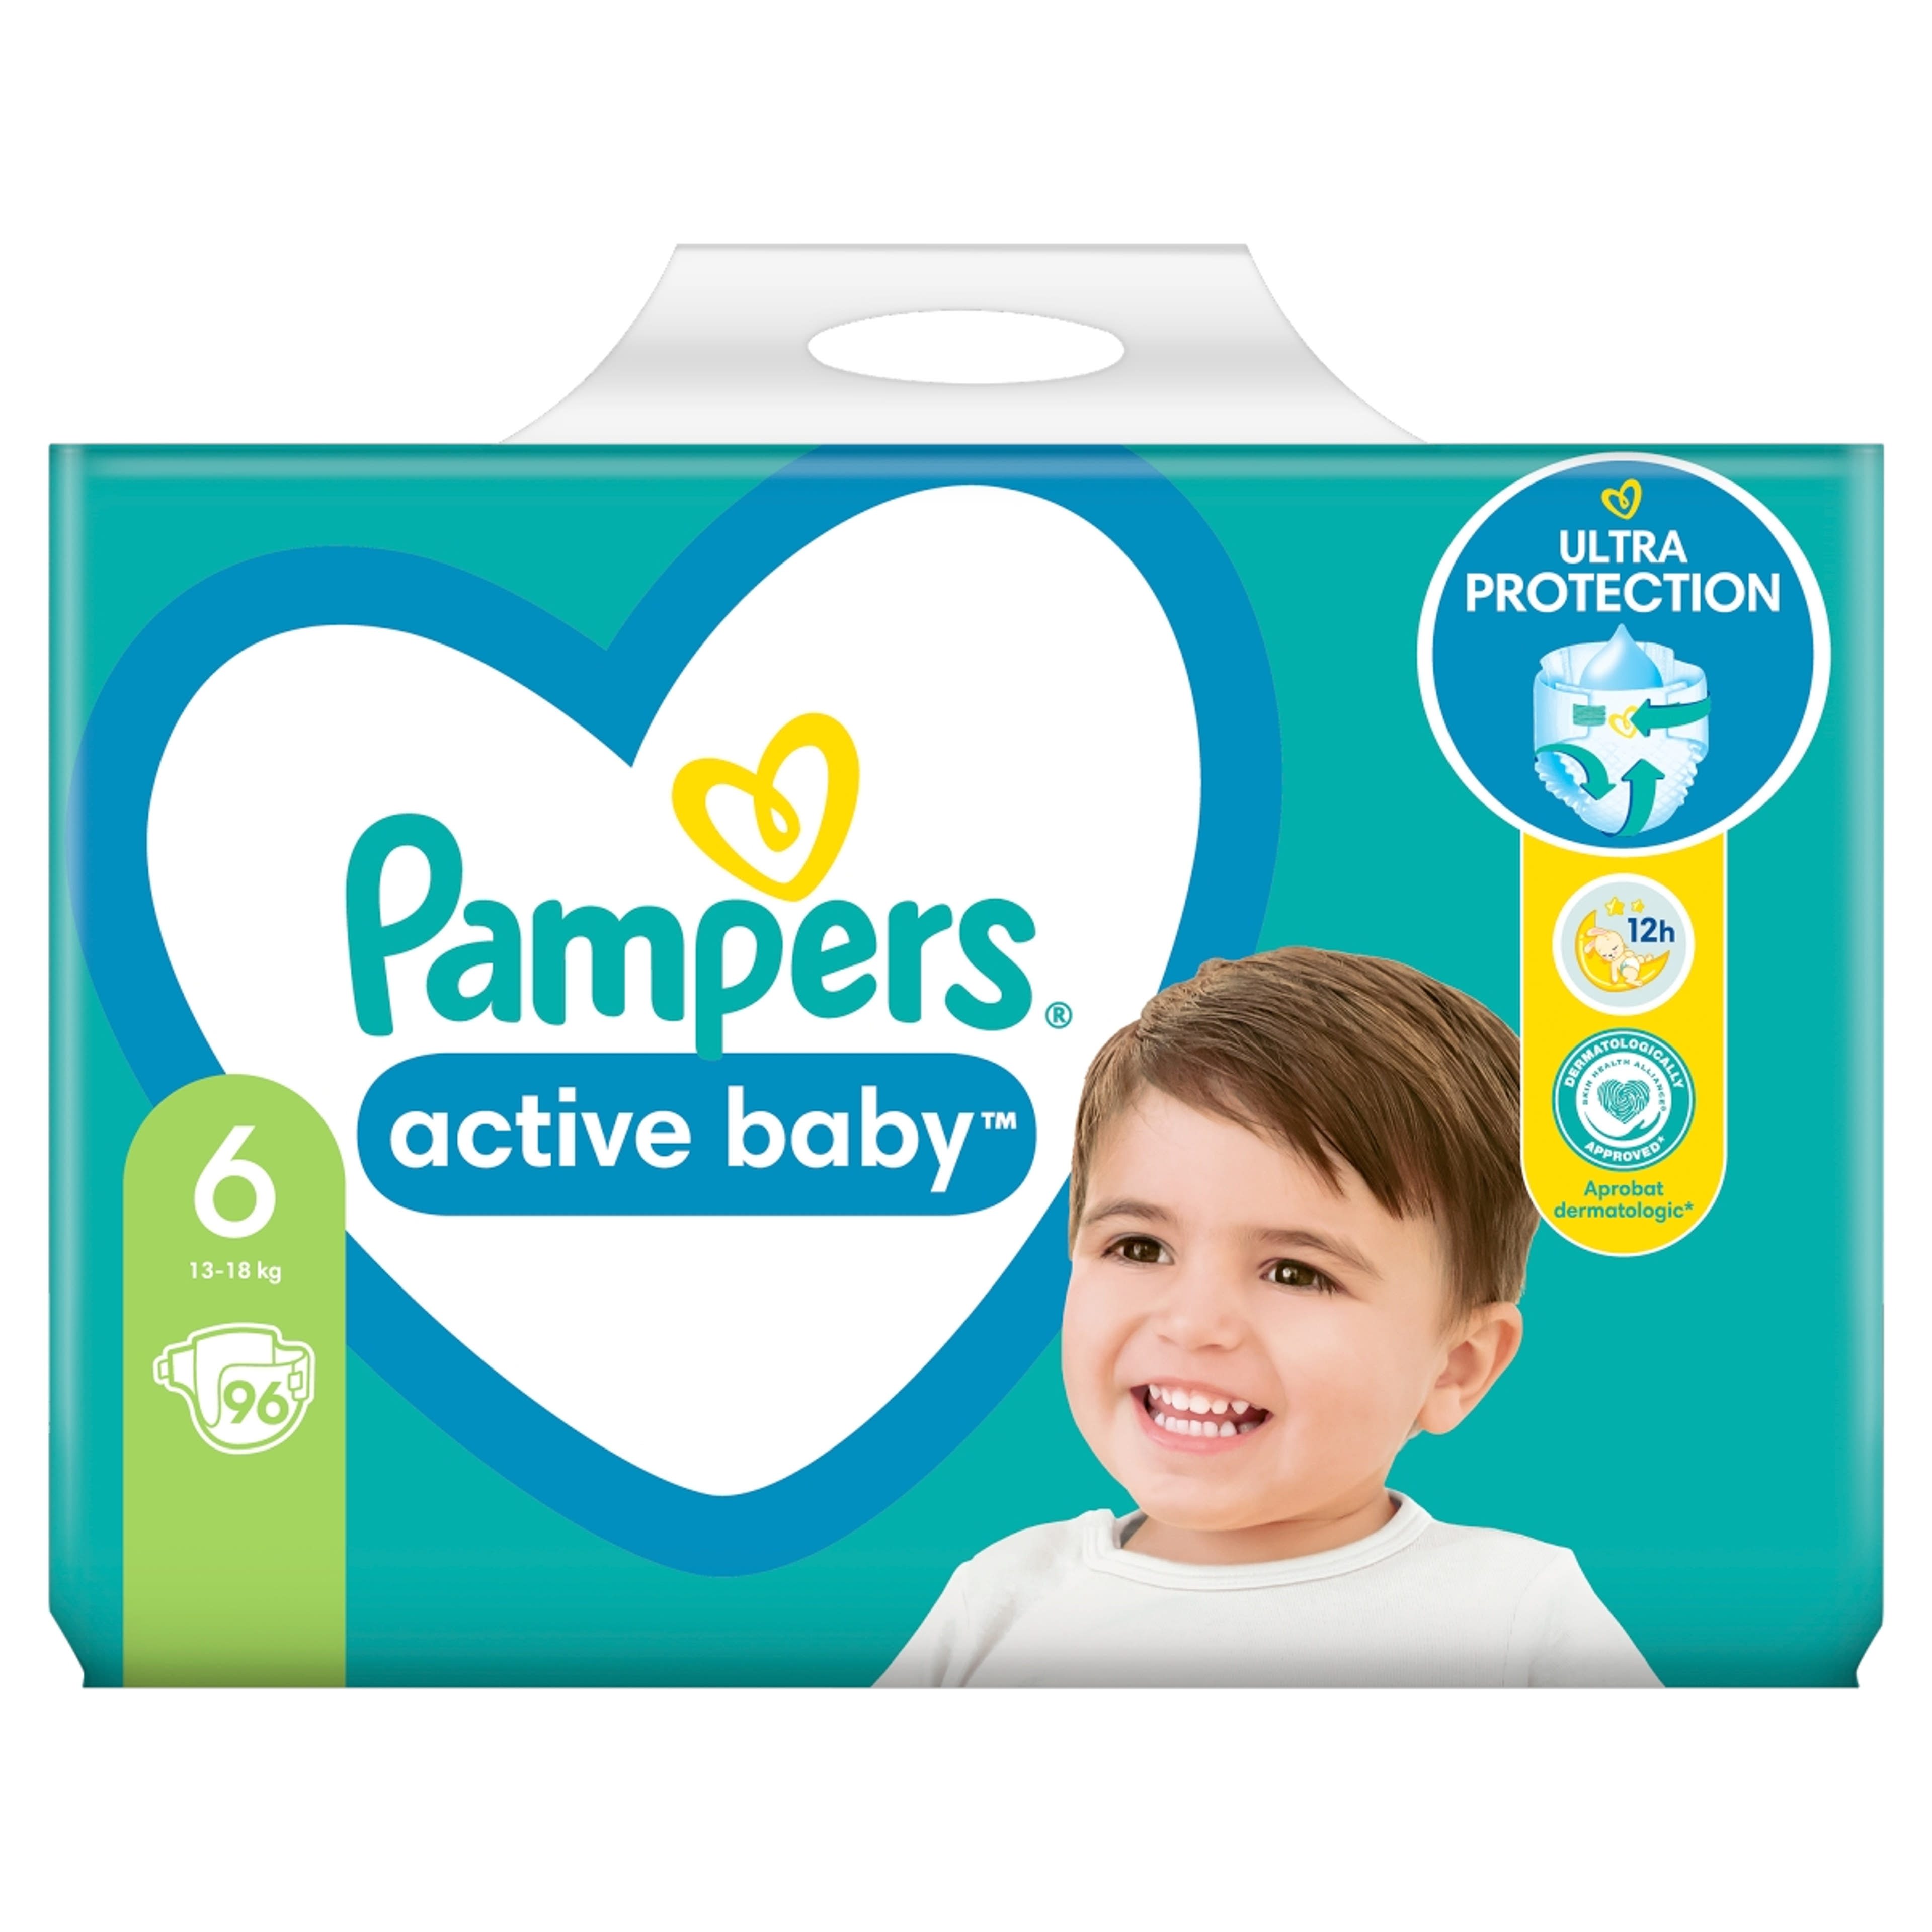 Pampers active baby mega pack+ 6-os 13-18kg - 96 db